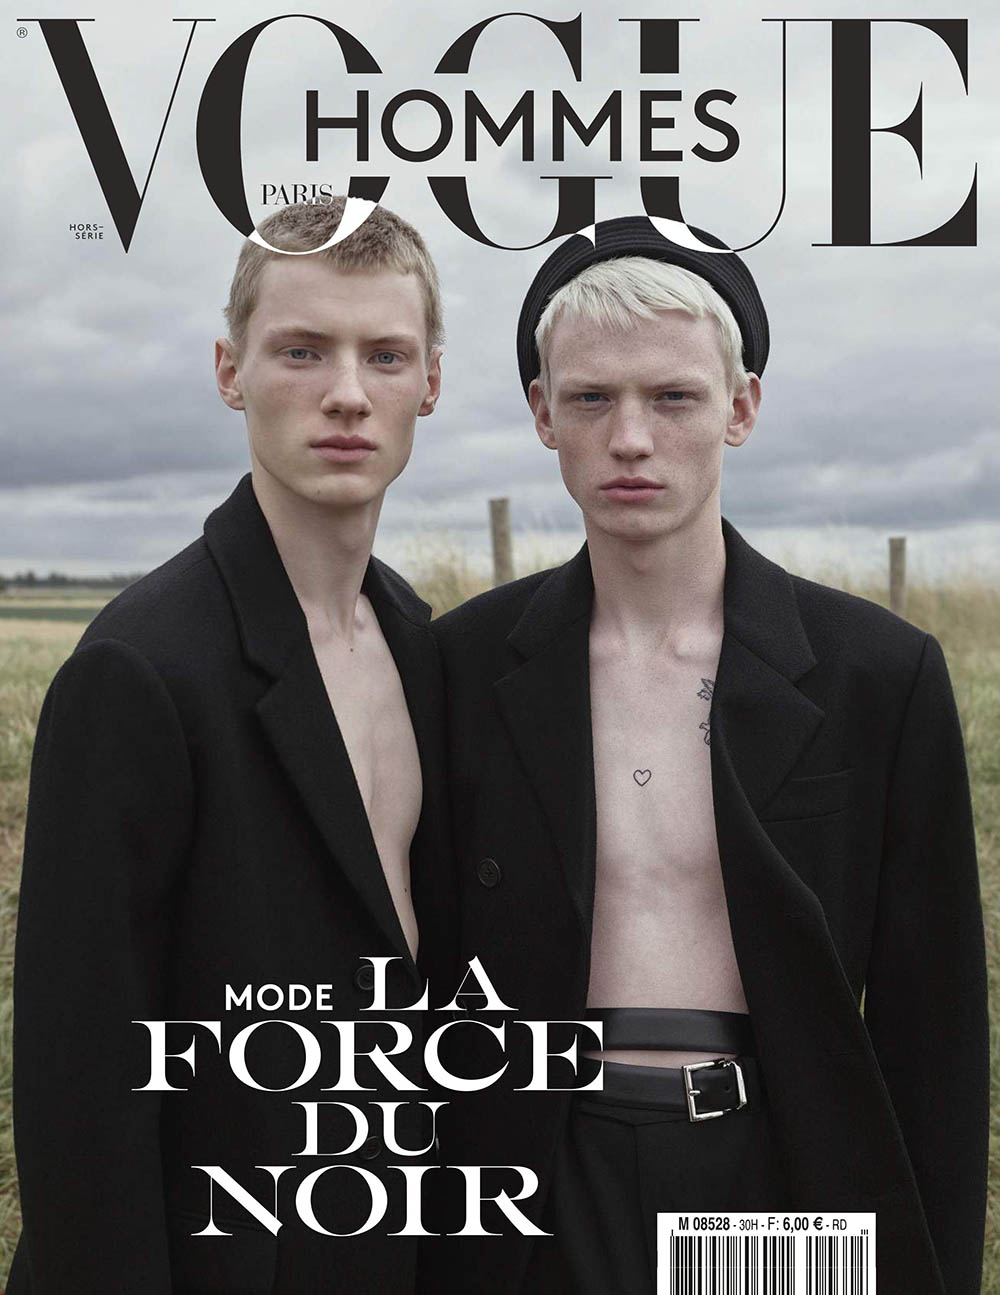 Braien Vaiksaar and Stas Zienkiewicz cover Vogue Hommes Paris Fall Winter 2019 by Willy Vanderperre